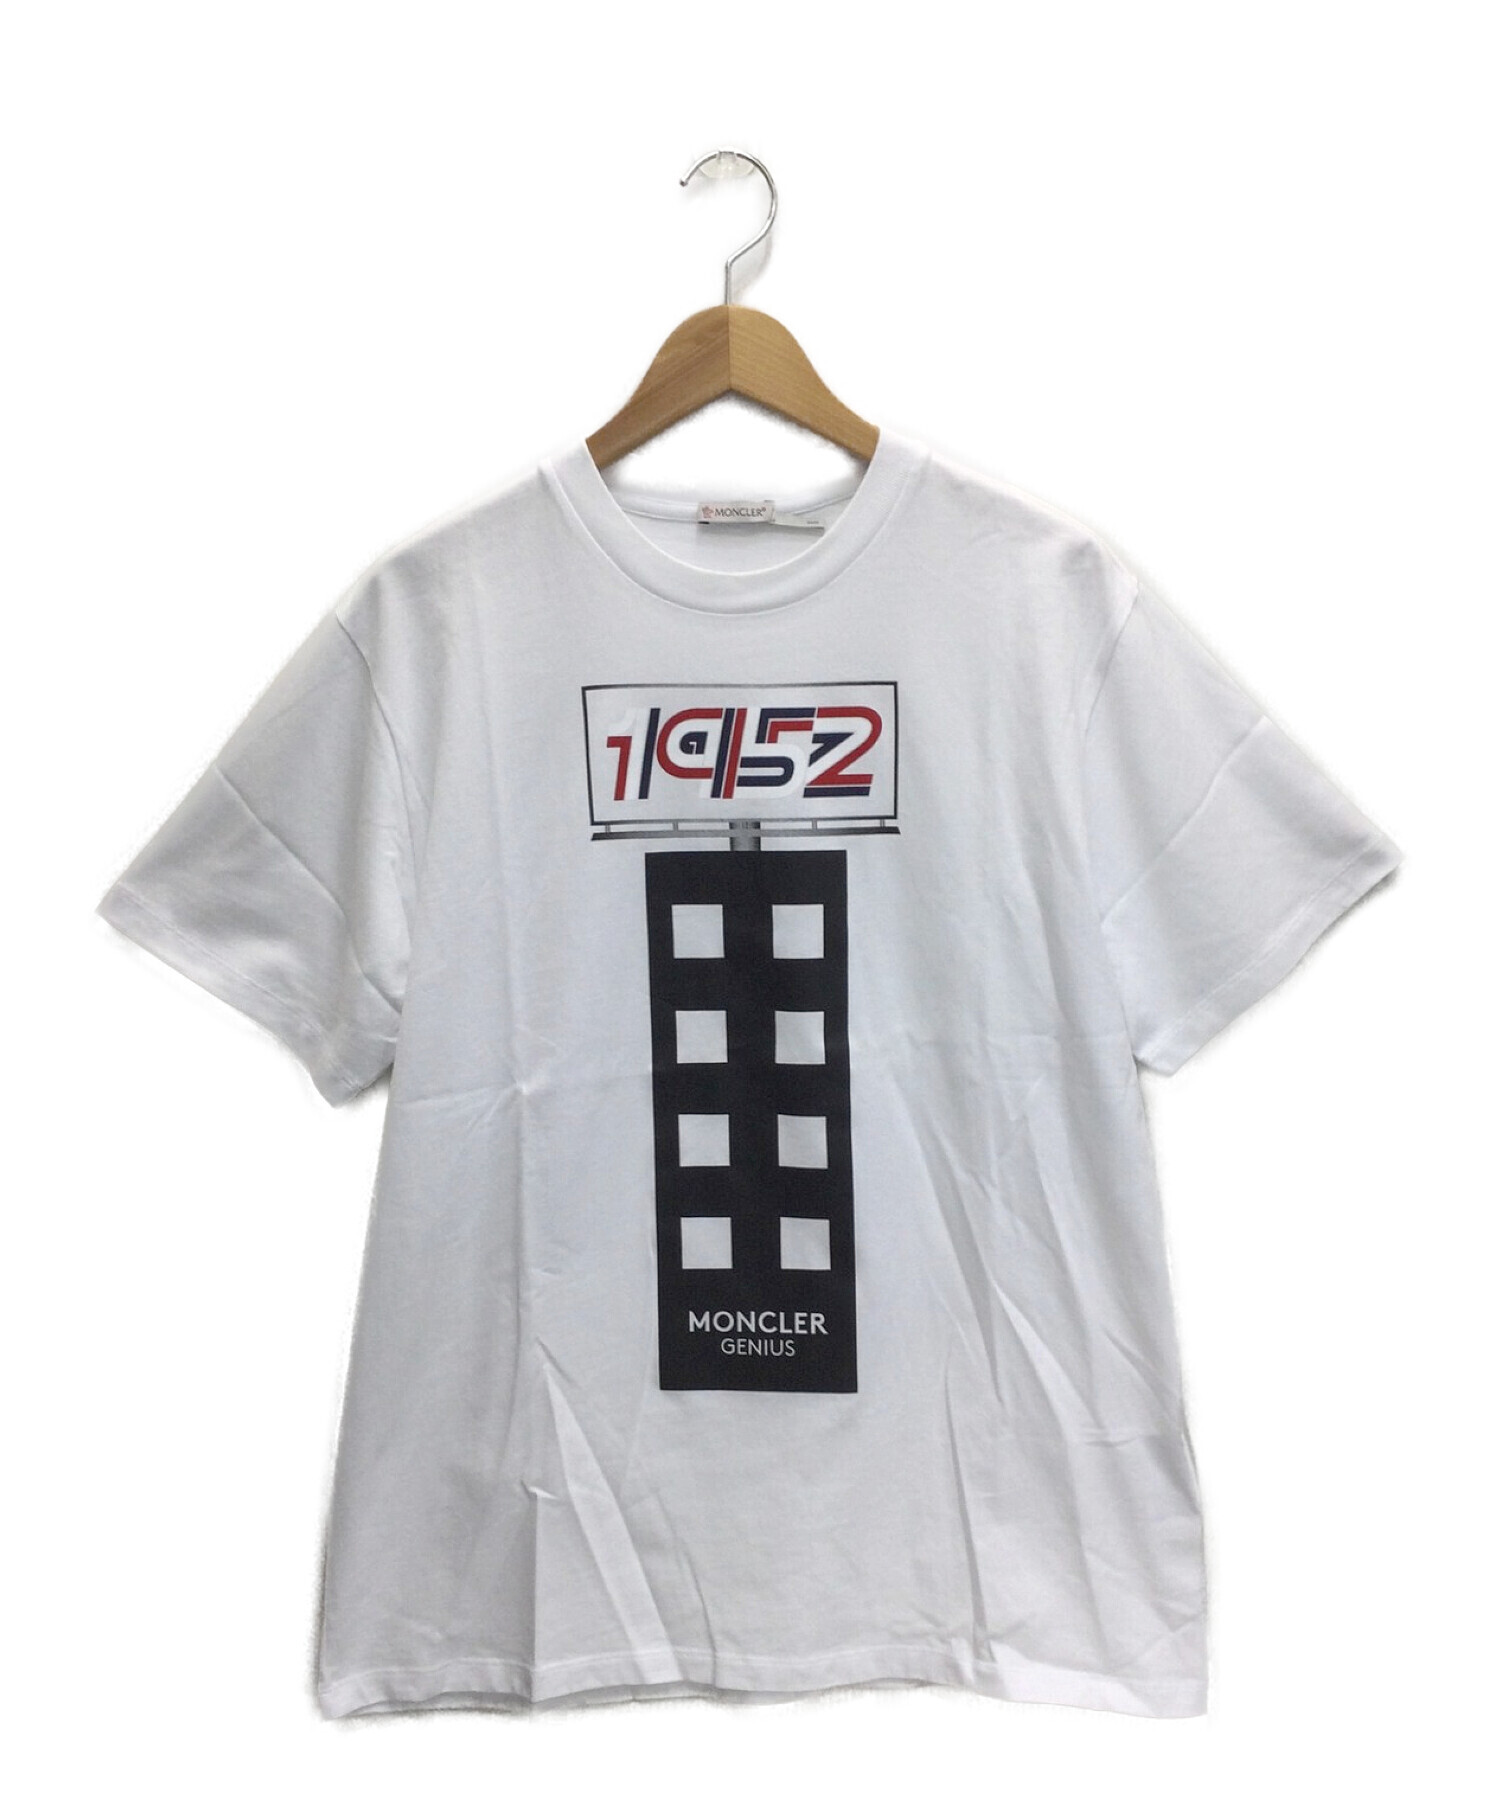 約47㎝【新品・未使用】モンクレール ジーニアス 1952 Tシャツ(半袖)